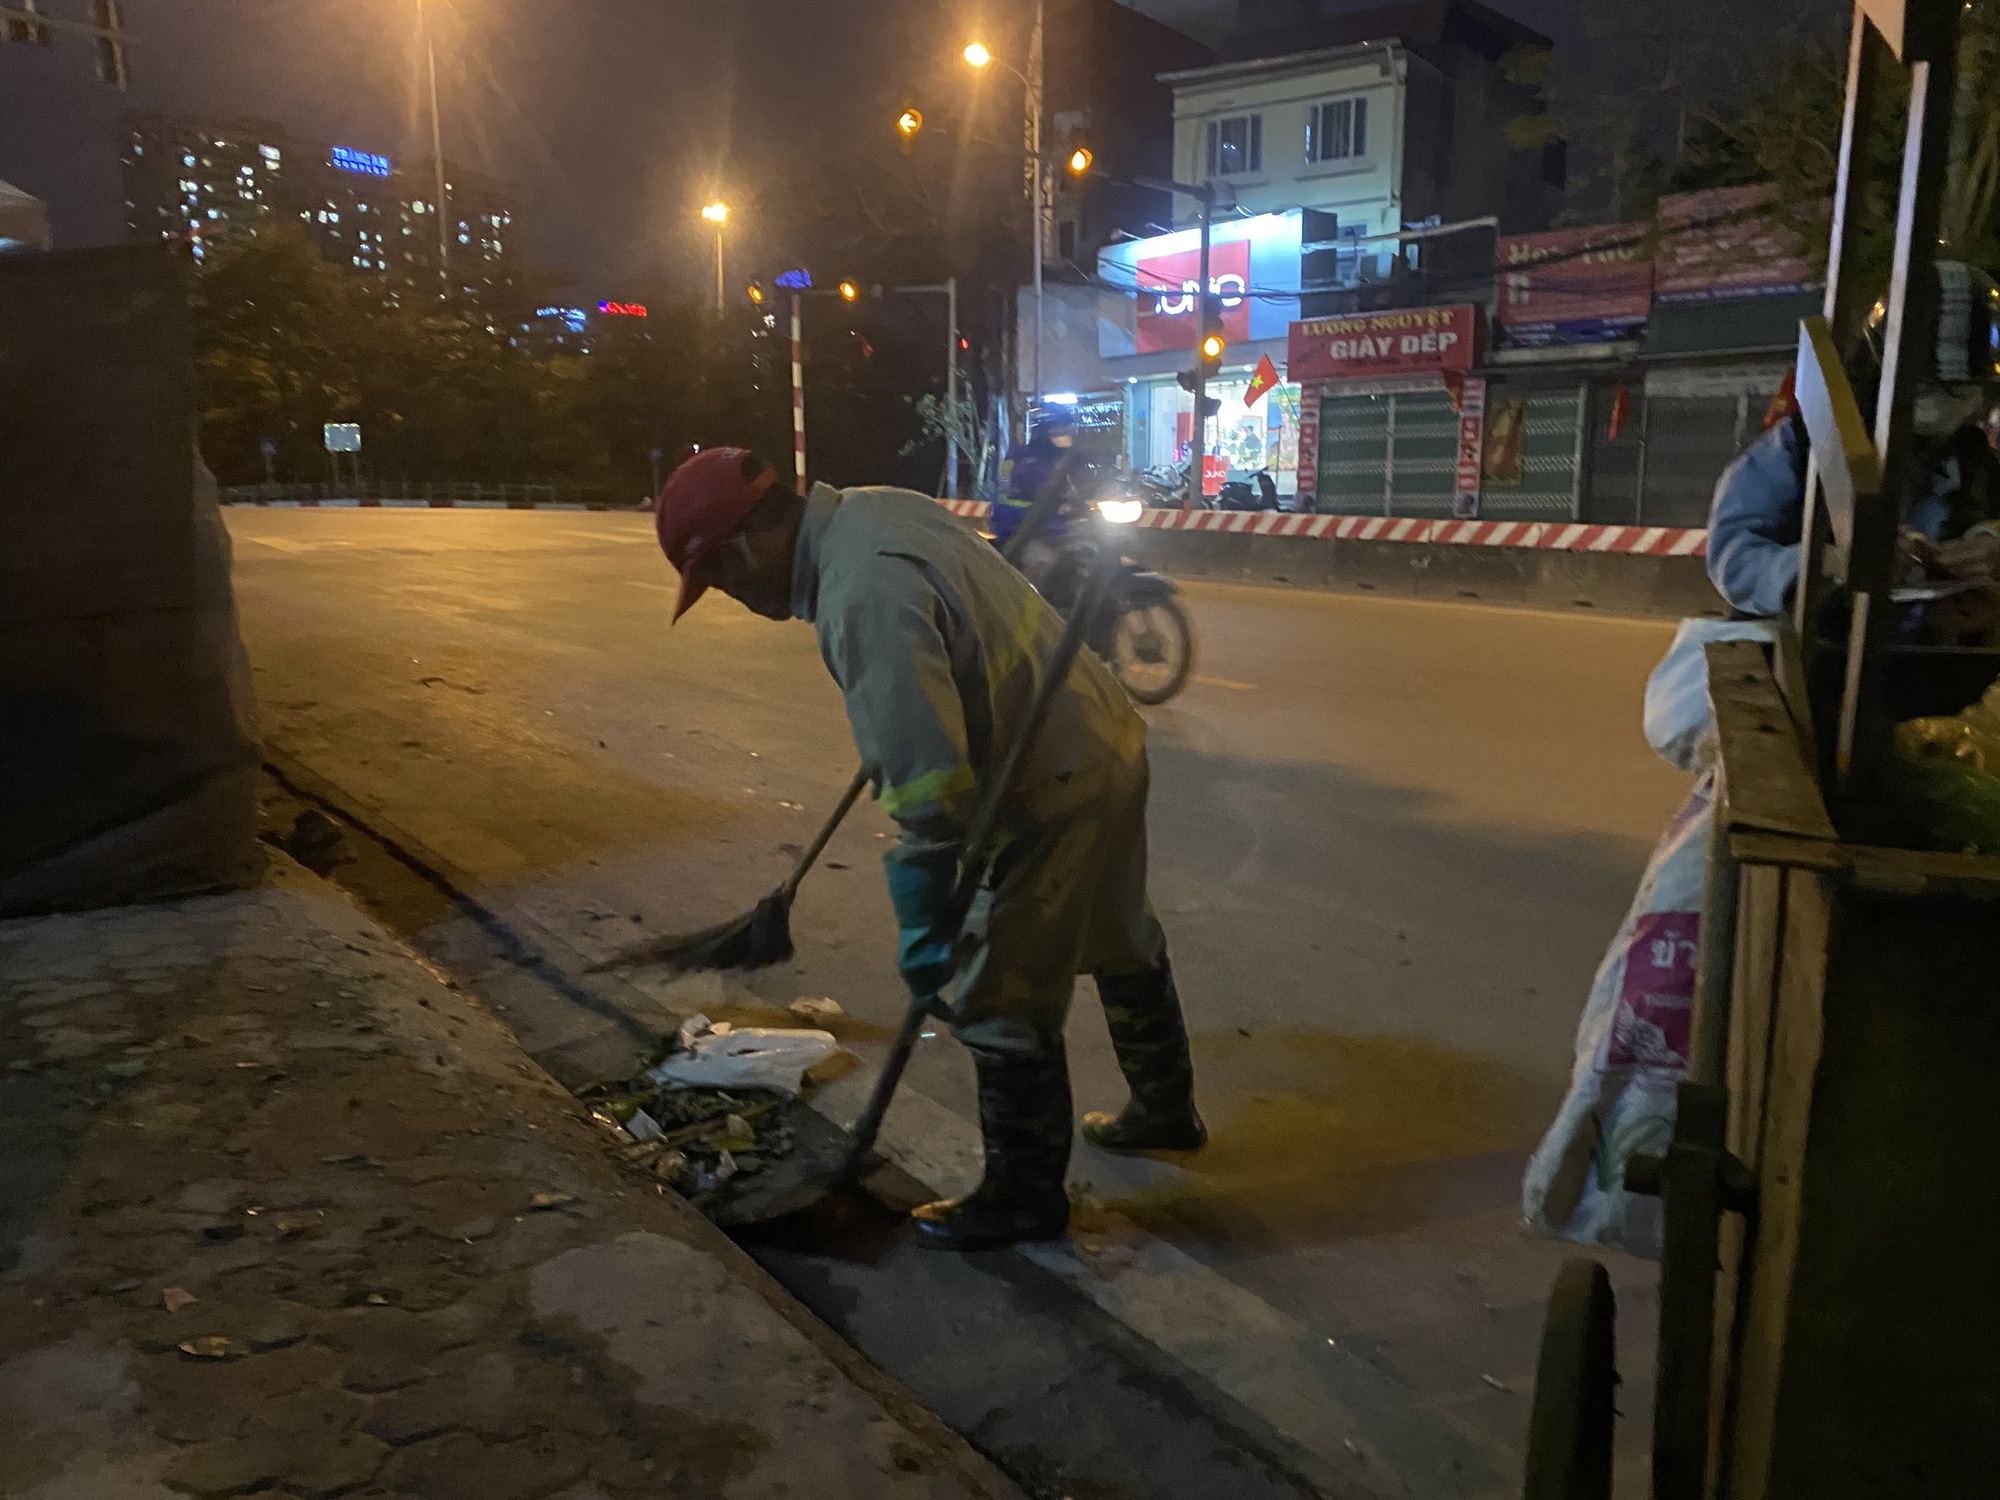 Nỗi cơ cực của công nhân quét rác giữa đêm giá lạnh “cắt da cắt thịt” ở Thủ đô Hà Nội  - Ảnh 5.